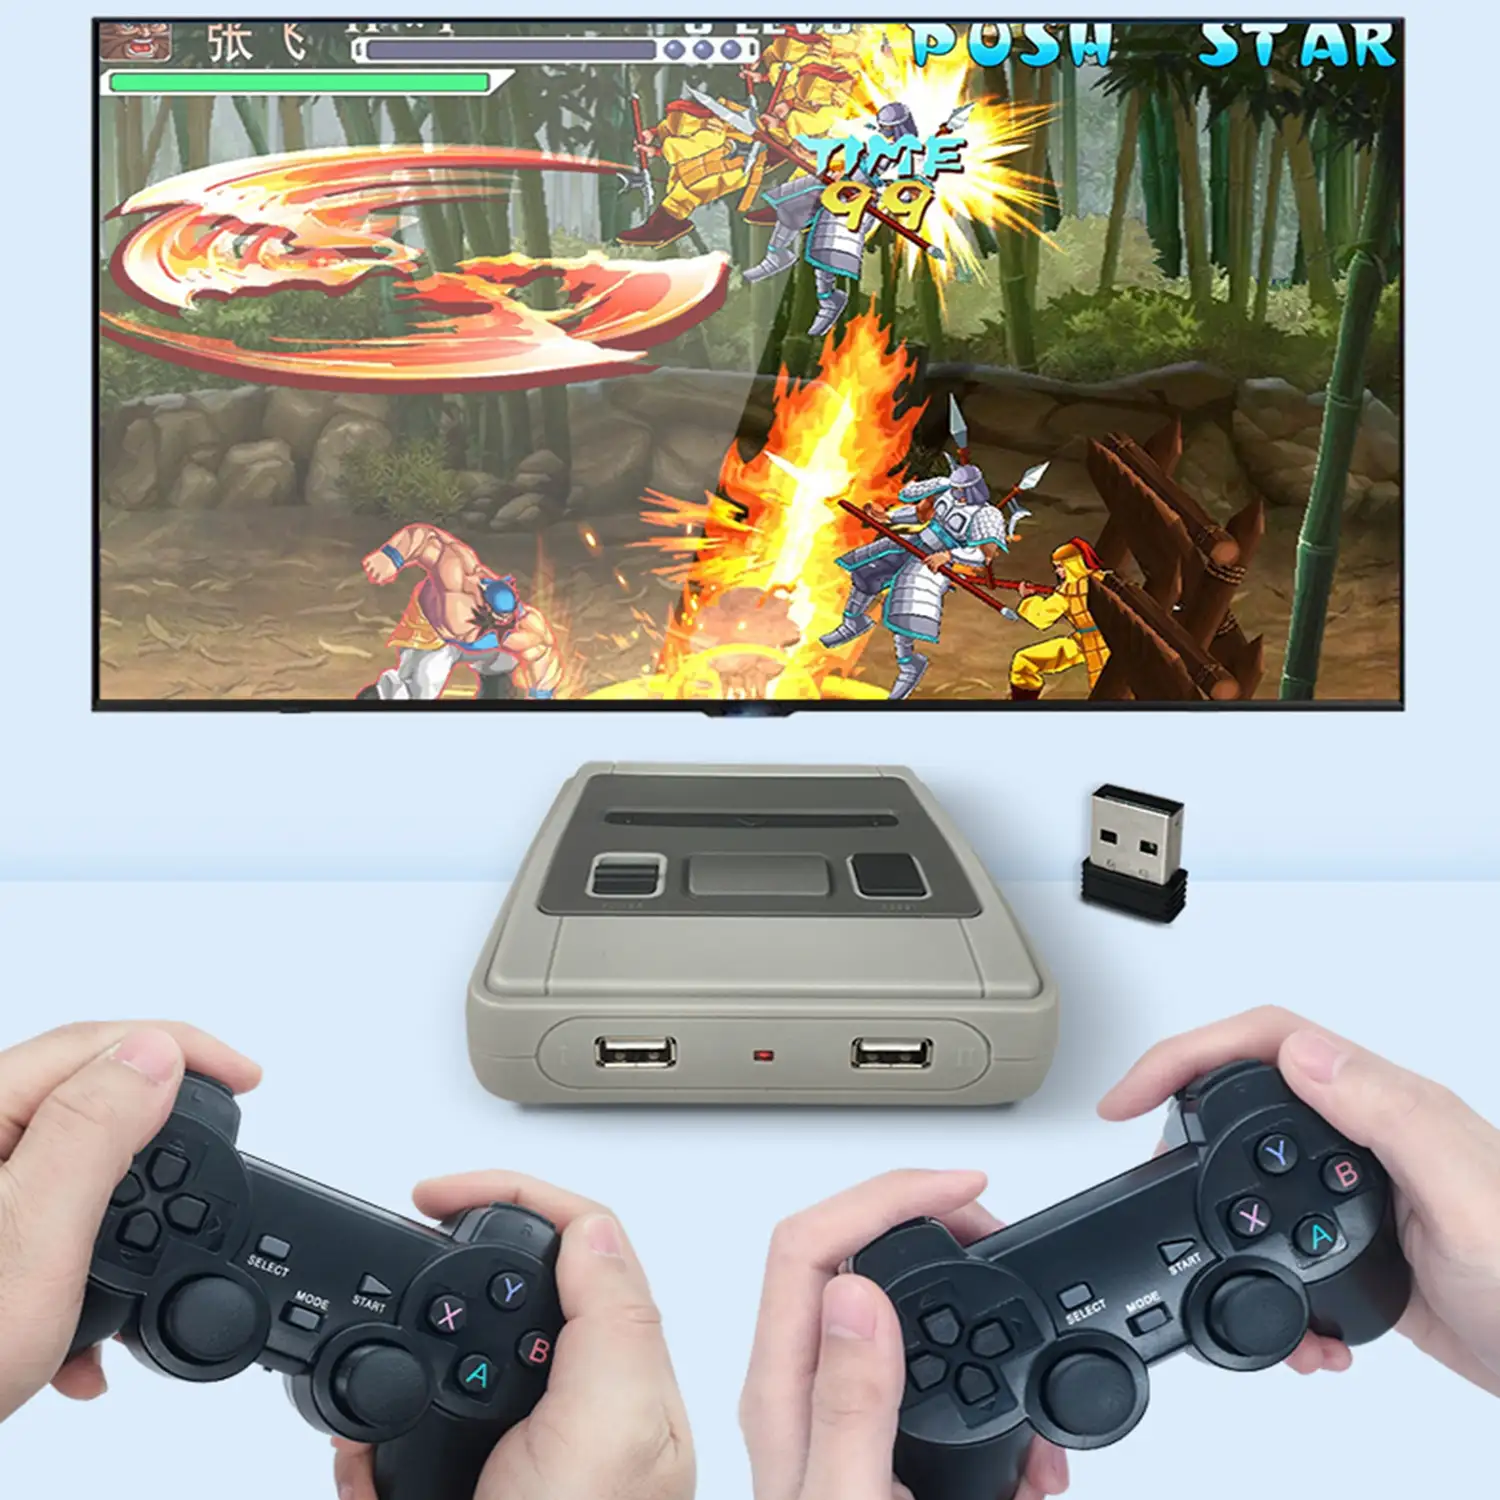 Consola retro simulador de juegos Inalámbrica de dos jugadores. Incluye dos mandos inalámbricos y tarjeta memoria con más de 13,000 juegos.